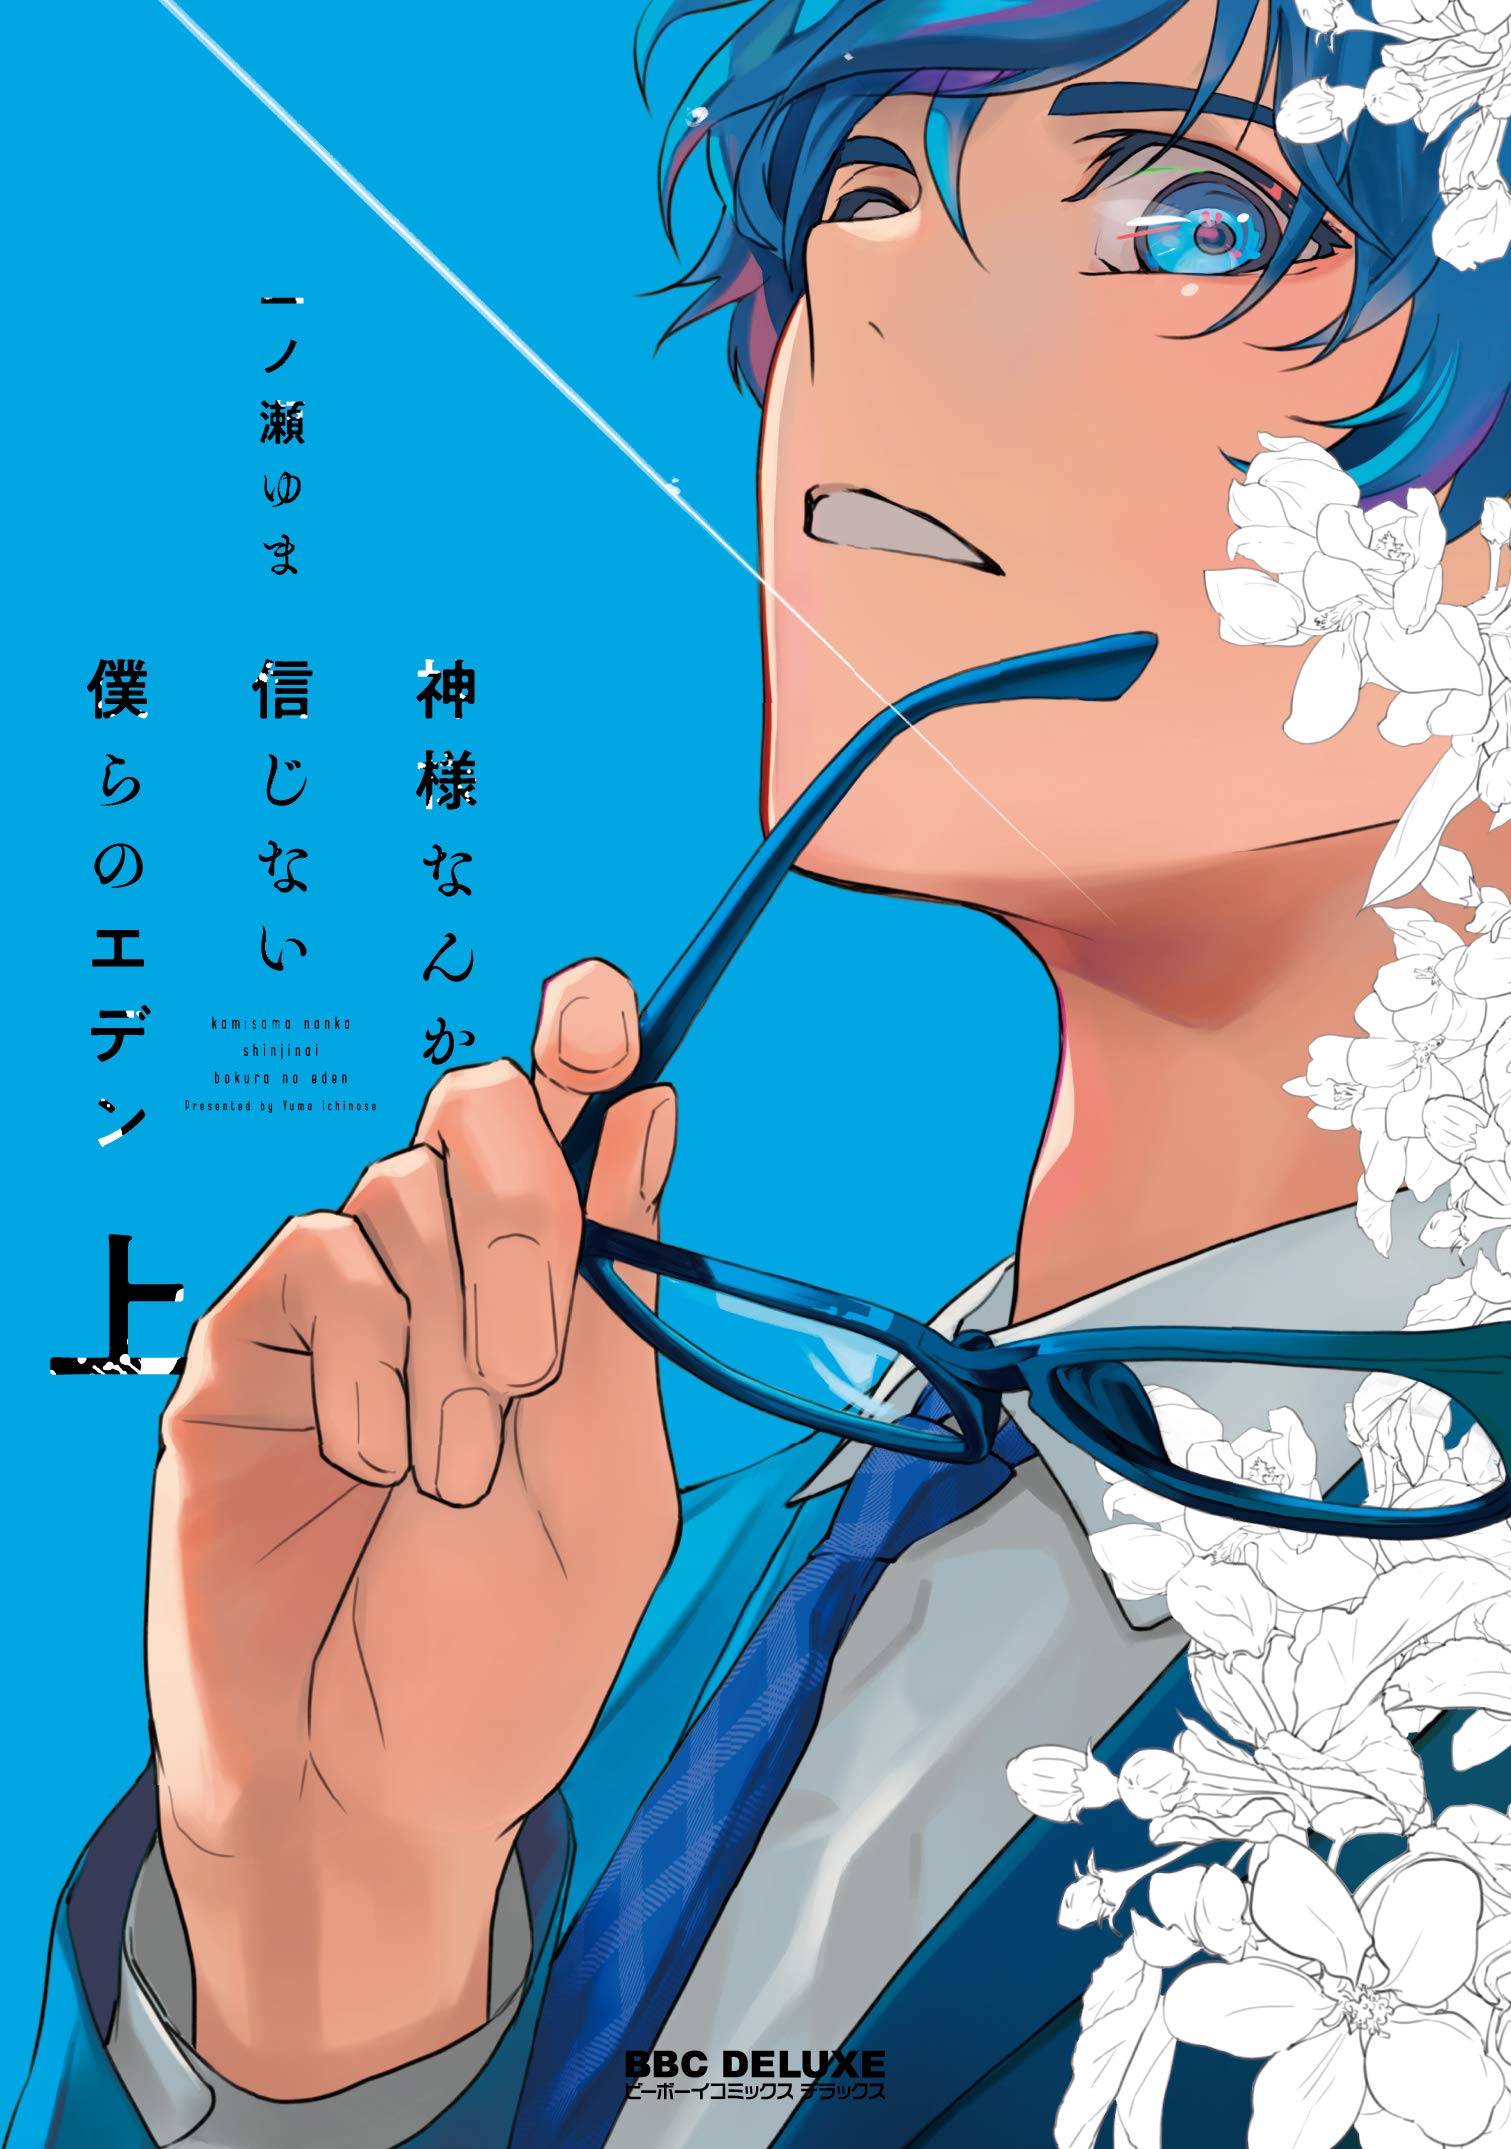 Boys Love (Yaoi) Comics - Kami-sama nanka Shinjinai Bokura no Eden (神様なんか信じない僕らのエデン (上) (ビーボーイコミックスデラックス)) / Ichinose Yuma